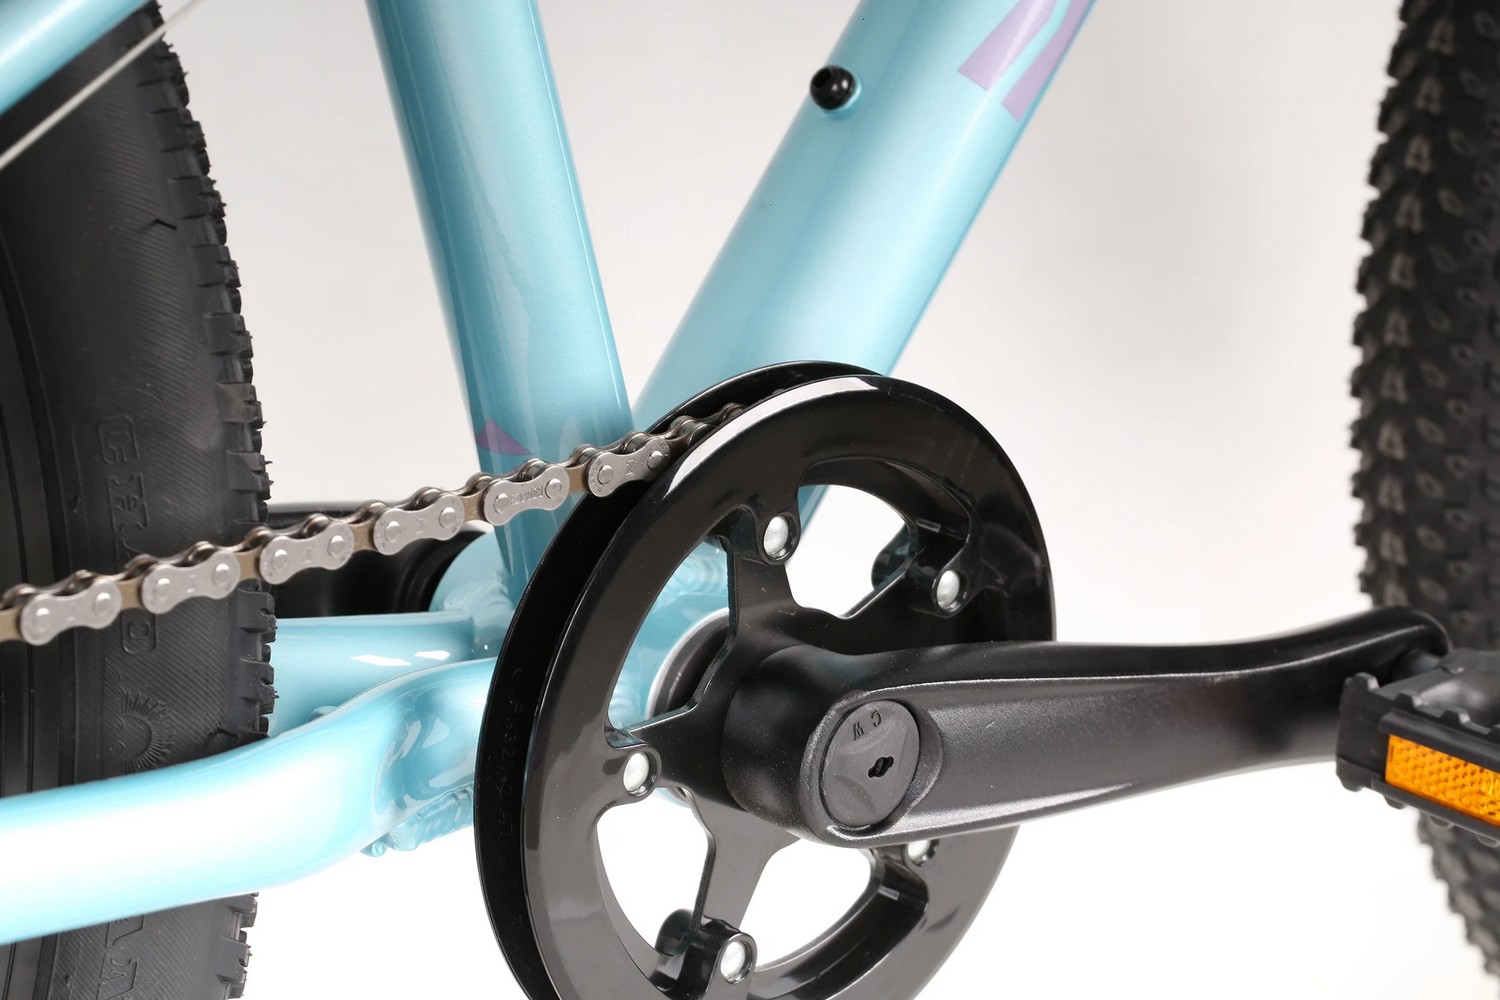 Подростковый велосипед Haro Flightline 24, год 2021, цвет Голубой-Фиолетовый